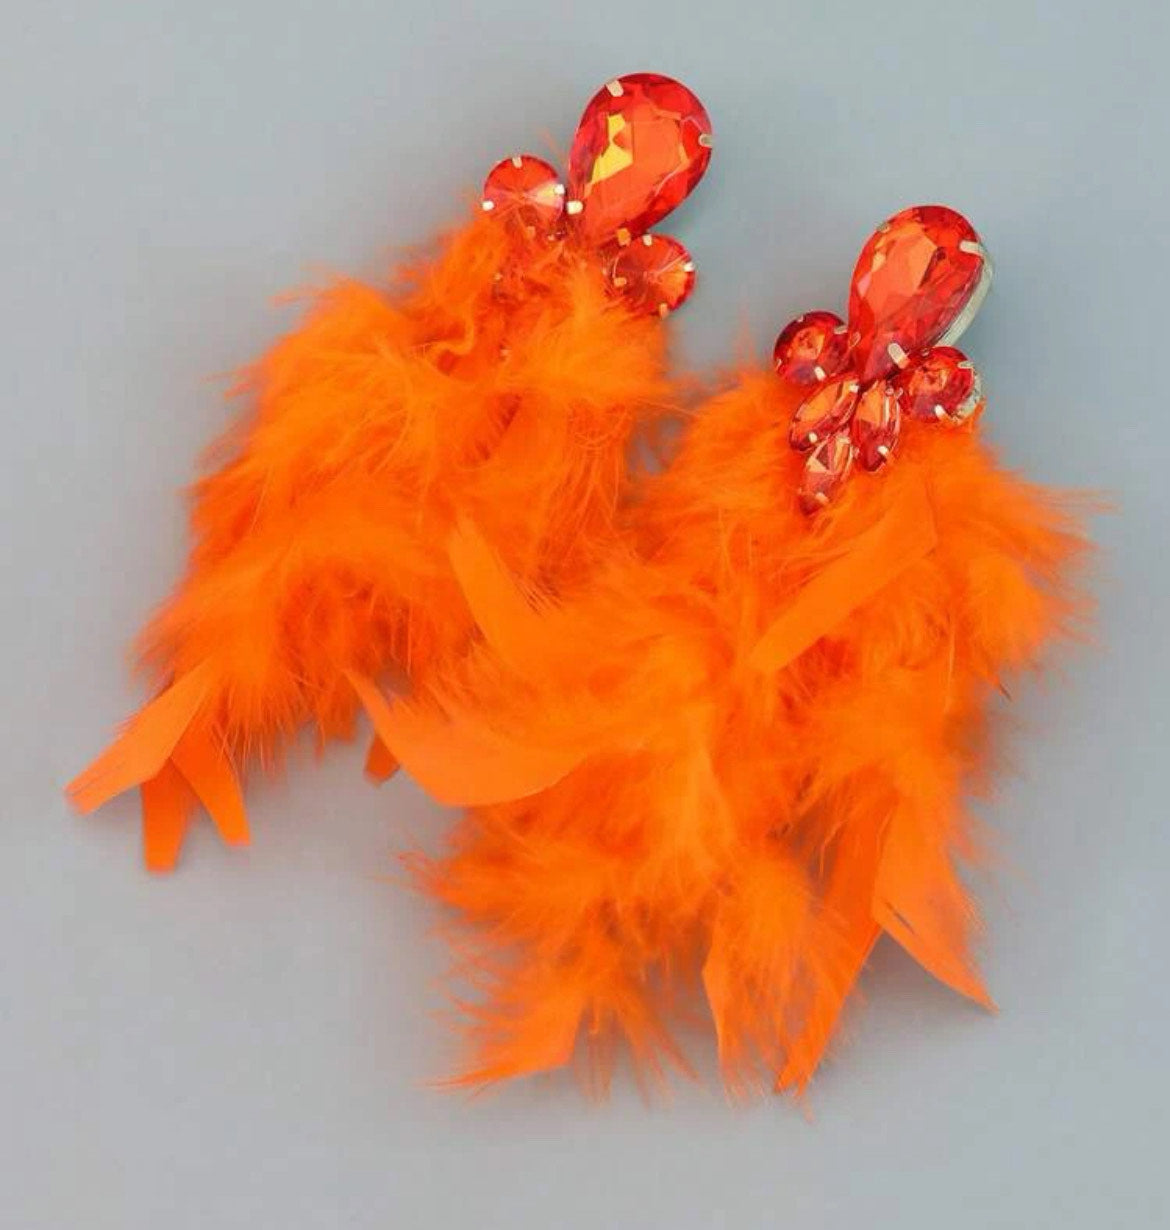 Orange Feather Earrings